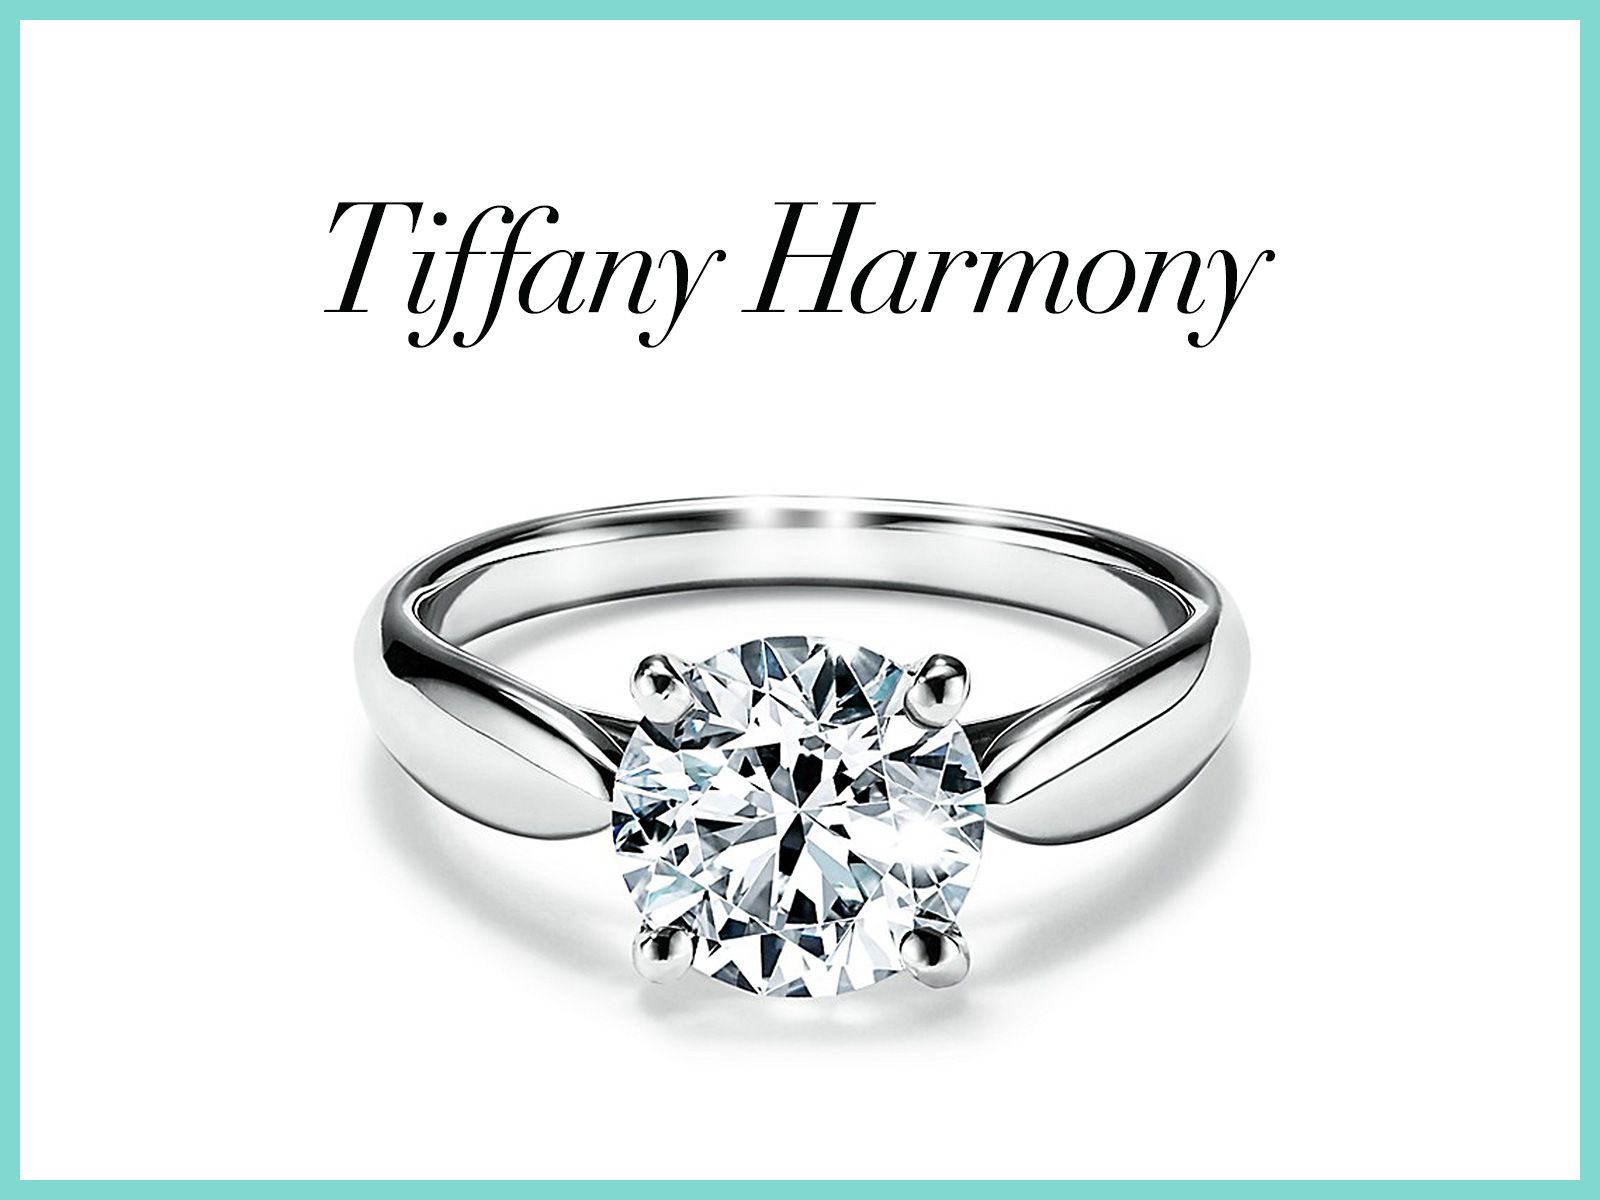 ティファニーの婚約指輪を総覧。そのダイヤモンドに秘められた特別な